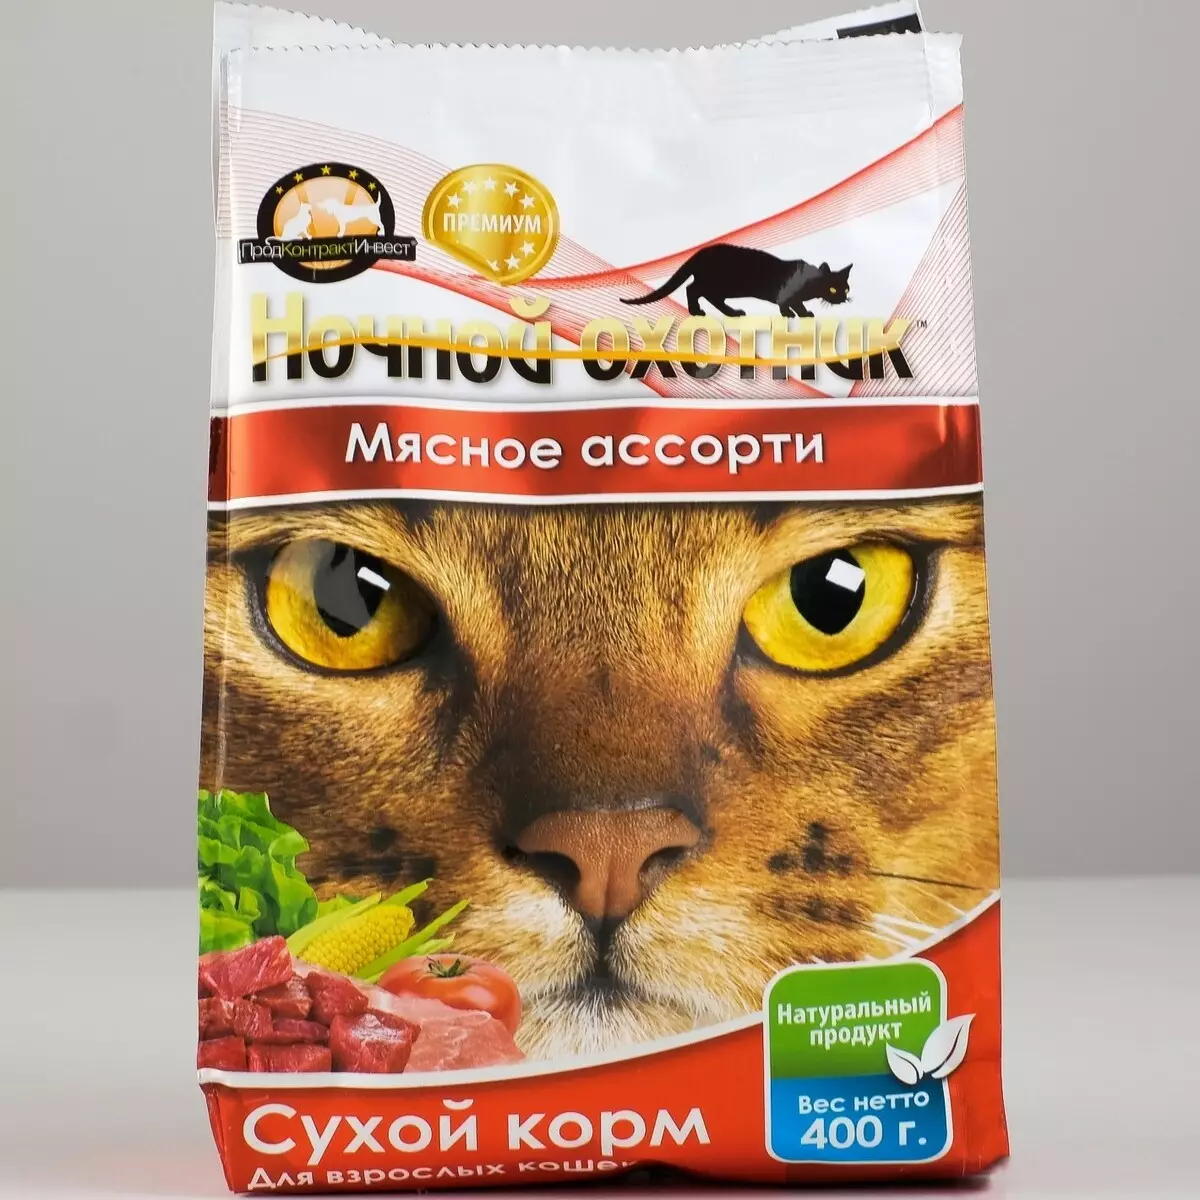 Կատուների կերակրումը «Գիշերային որսորդ». Կազմը: Սնունդ kittens եւ ստերիլիզացված կատուների, չոր եւ խոնավ կուտակային սննդի արտադրողի համար: Վերանայման ակնարկներ 22008_11